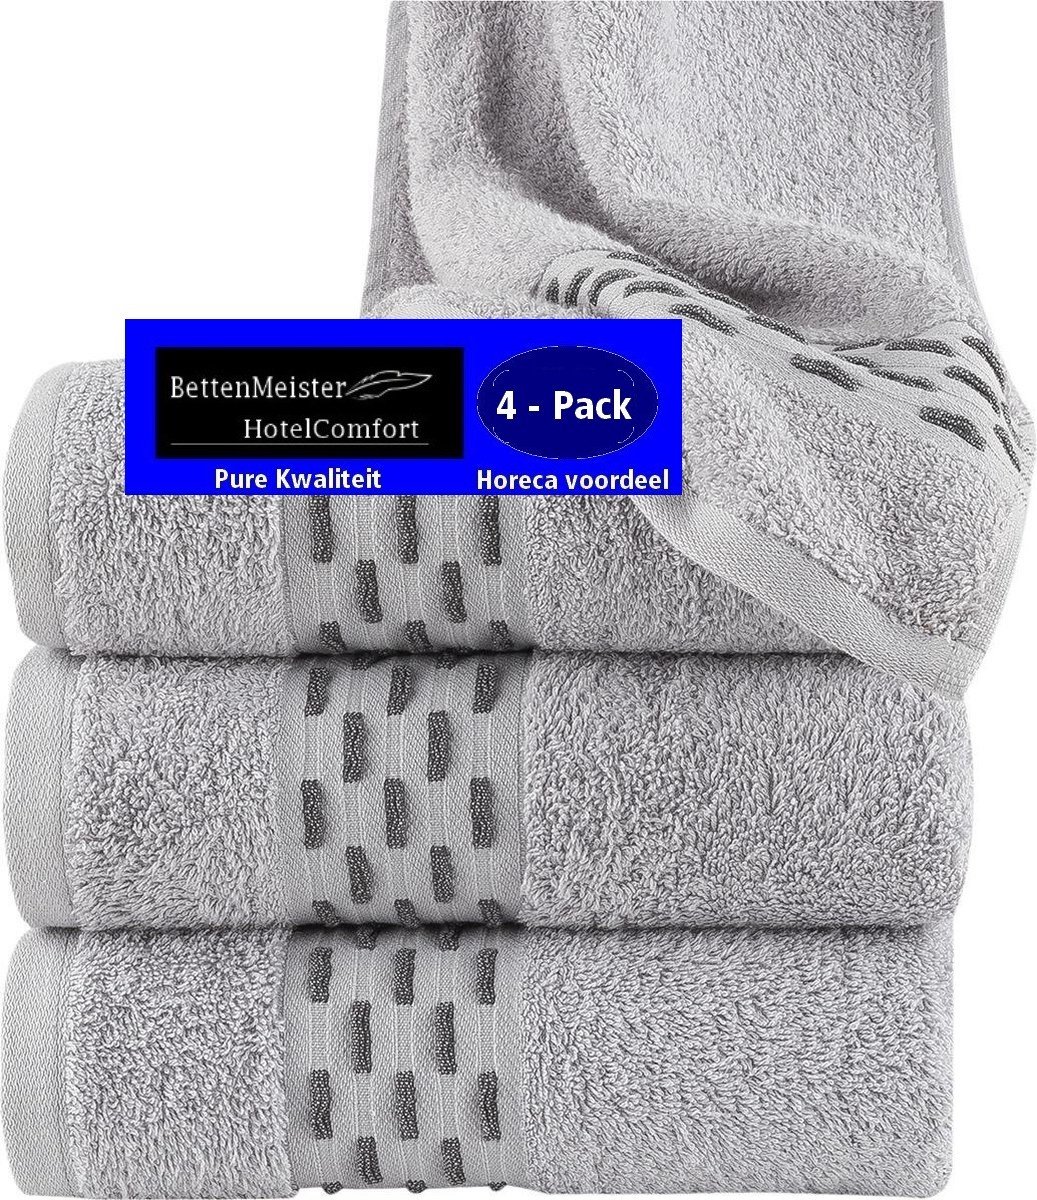 4 Pack Handdoeken - (4 stuks) golf jacquard grijs 50x100 cm - Katoen badstof